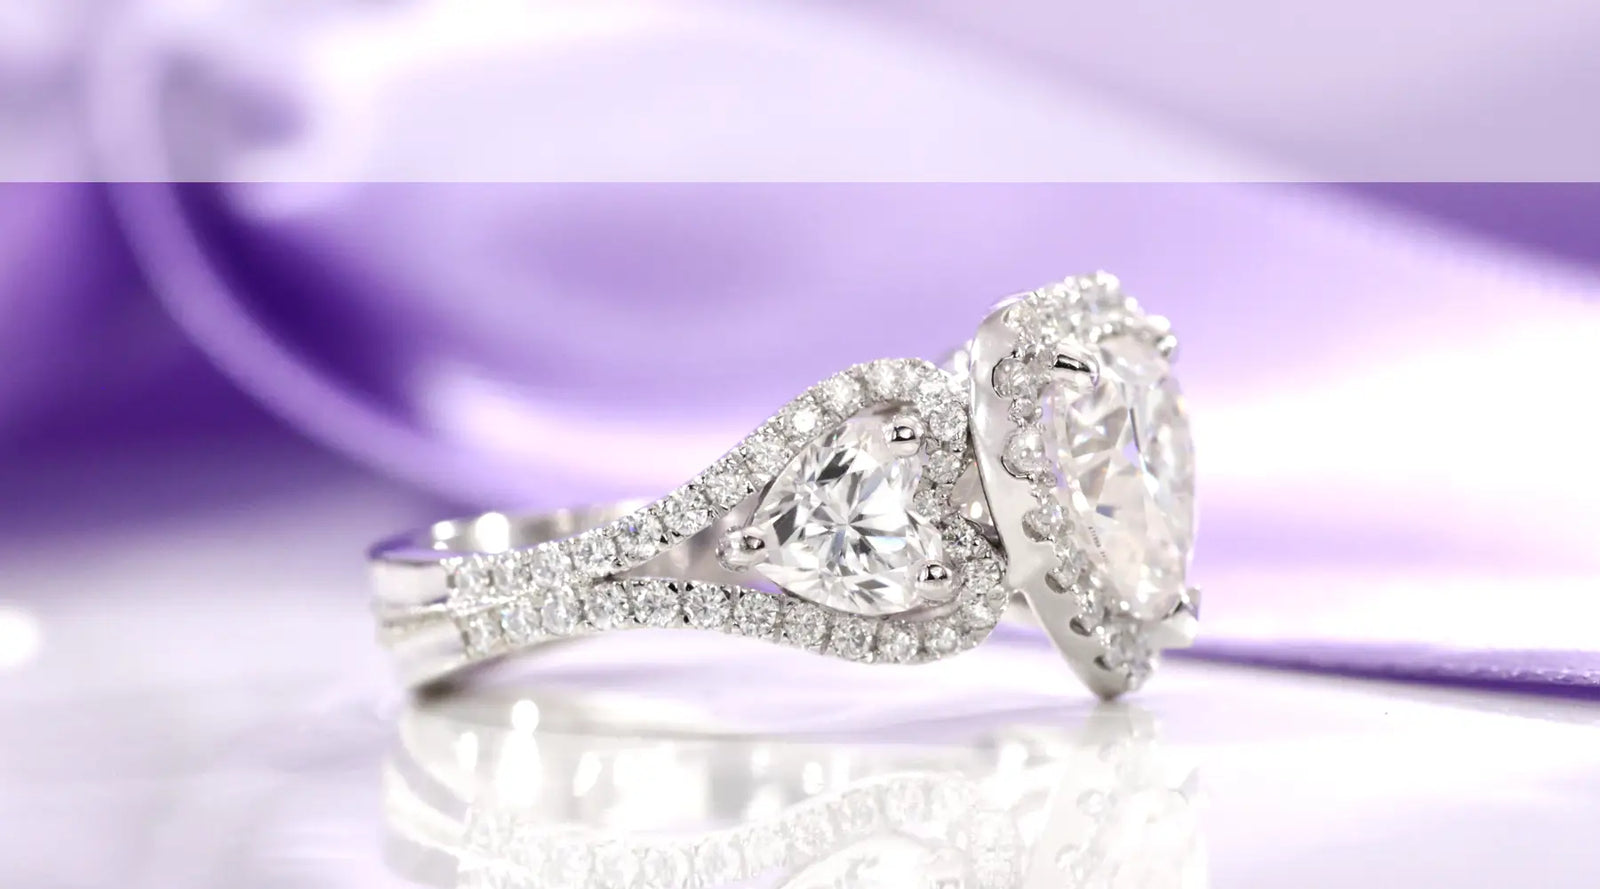 custom design your own gold and platinum diamond engagement ring at Quorri 